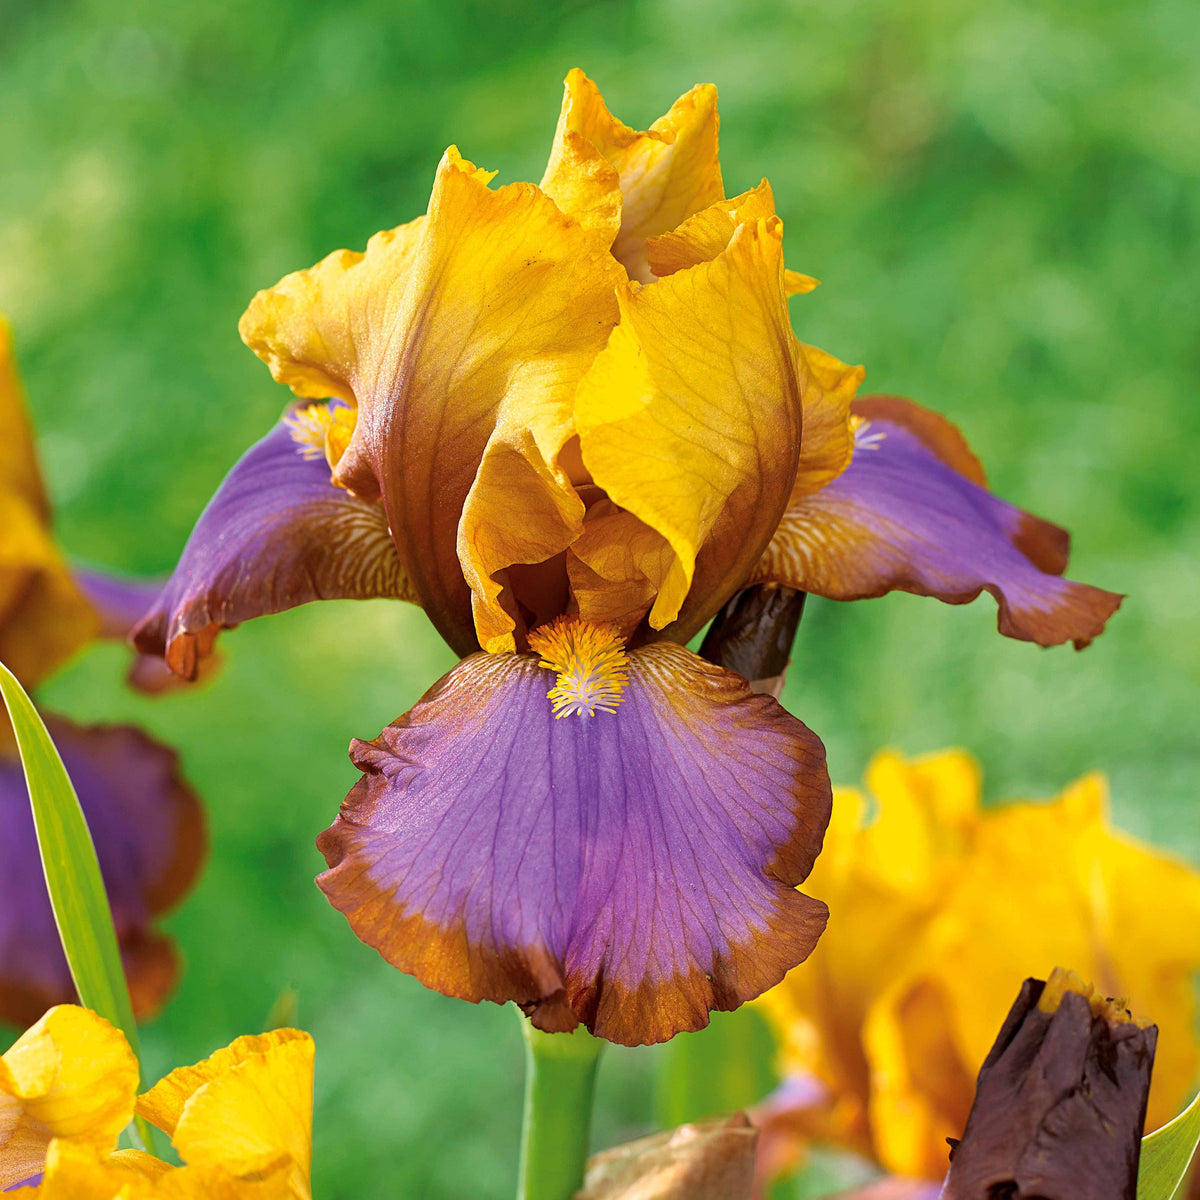 Iris de jardin Lasso marron - Iris germanica brown lasso - Plantes